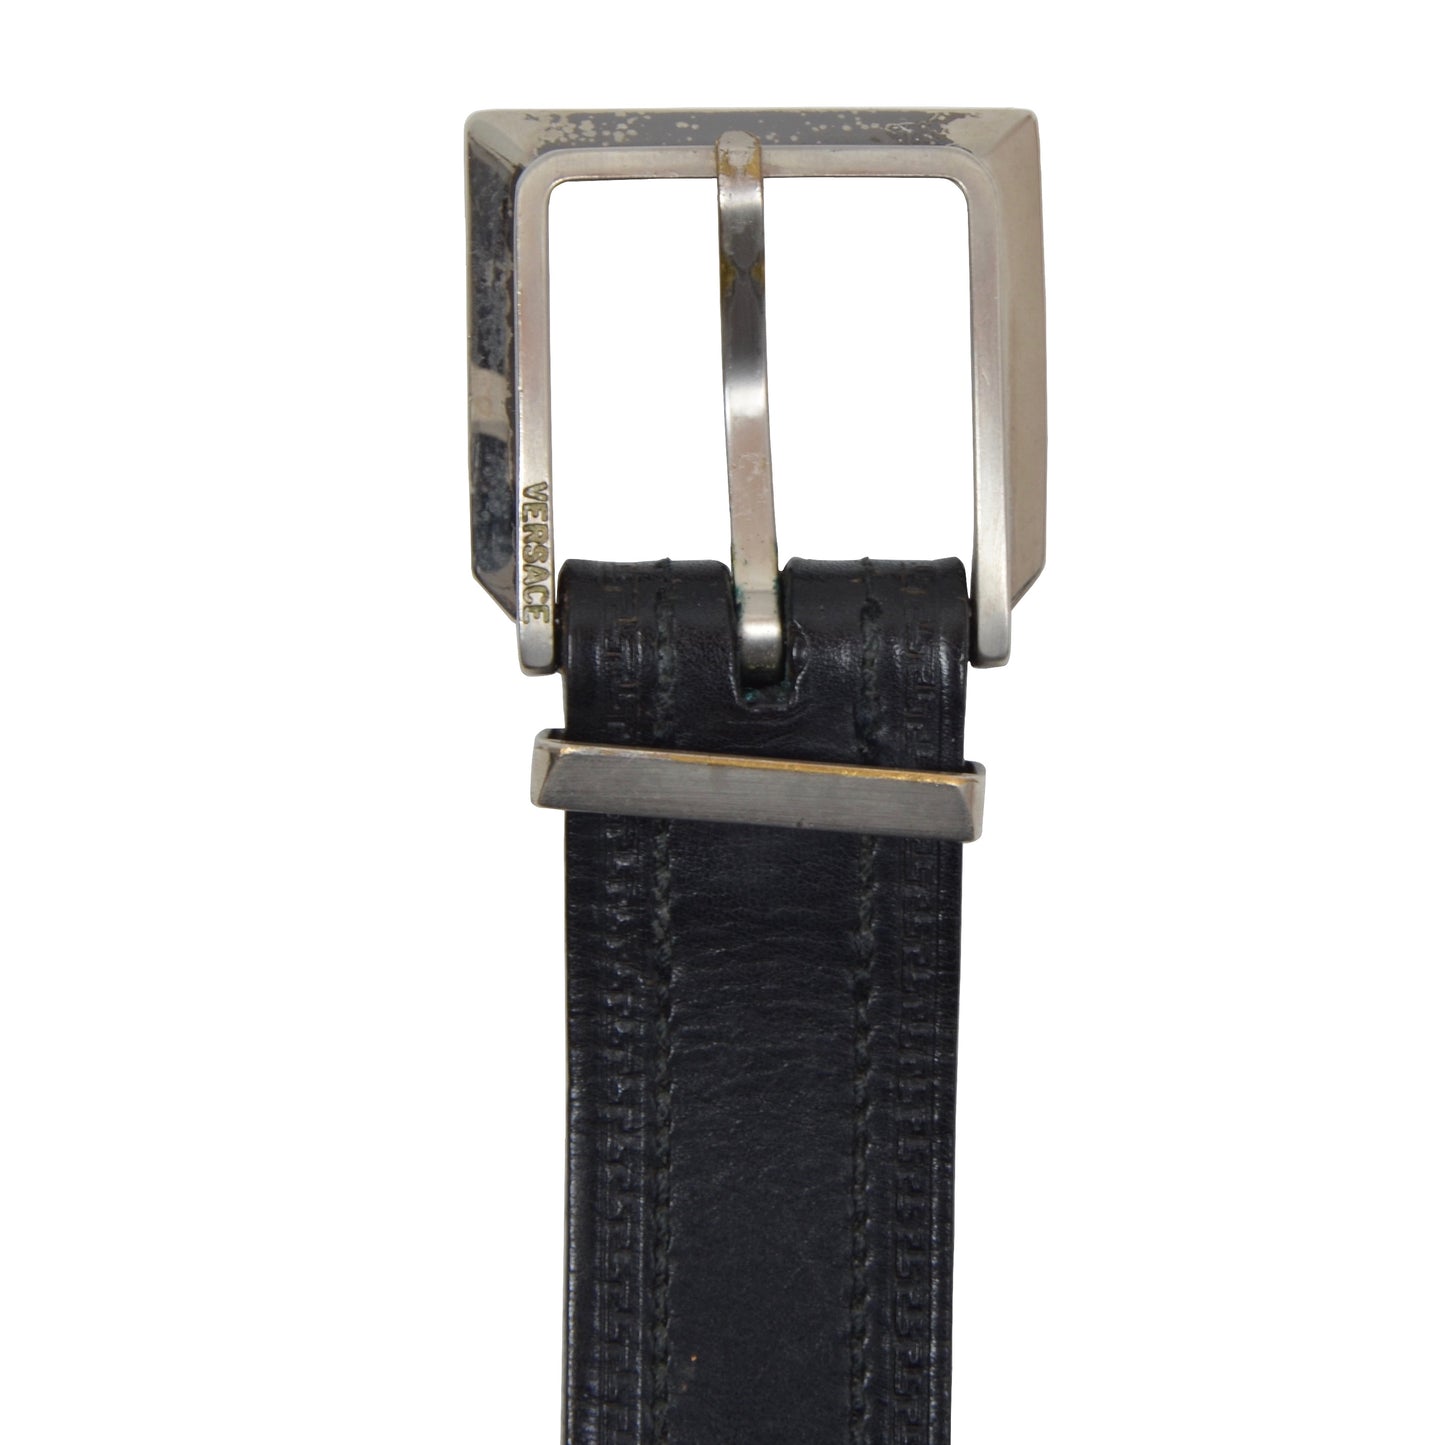 Vintage Gianni Versace griechischen Schlüssel Gürtel 3284 Größe 95/38 - schwarz